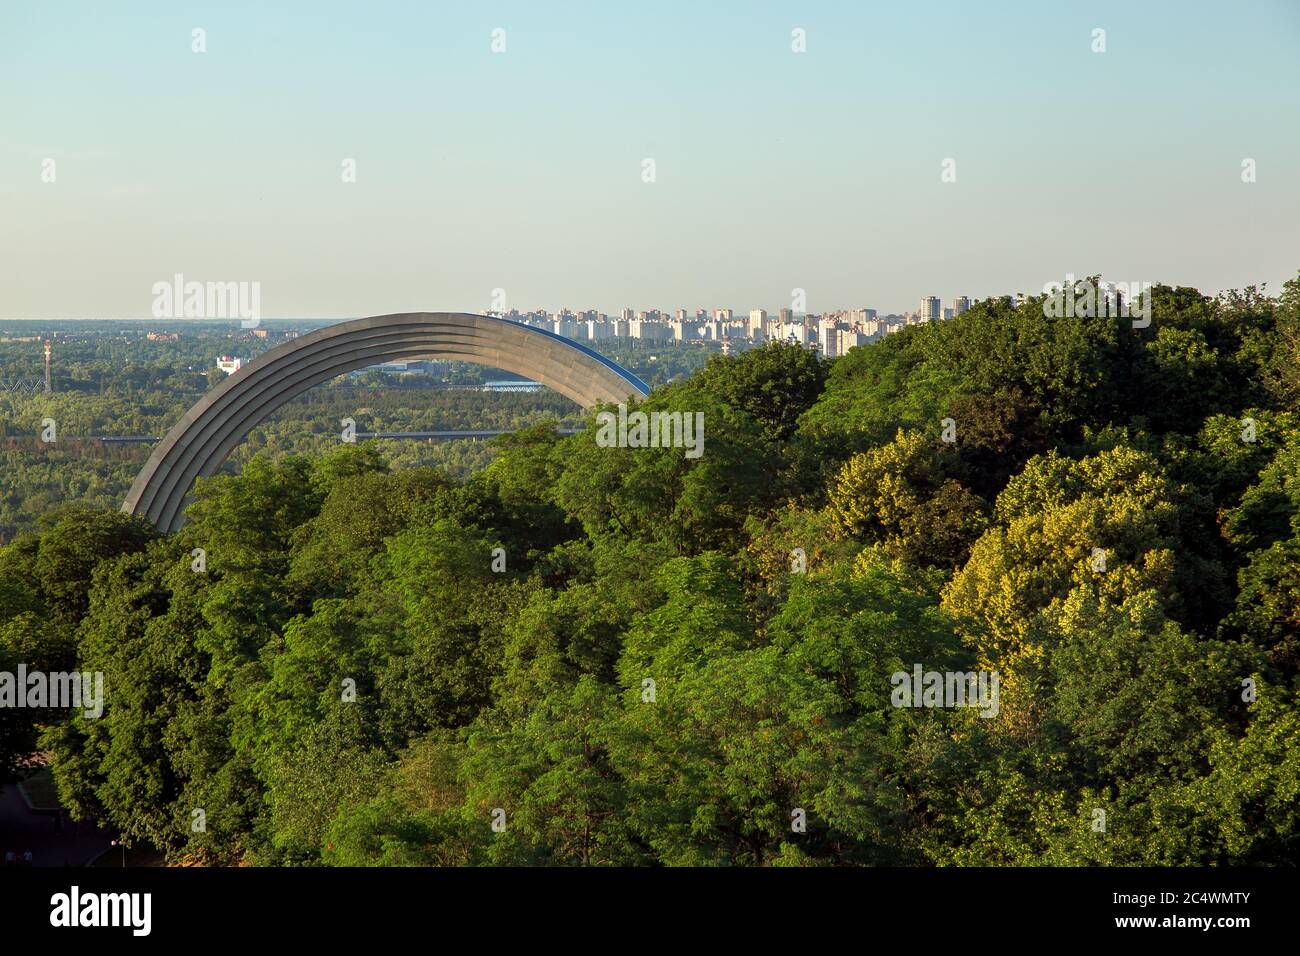 KIEW, UKRAINE - 4. Juni 2018: Denkmal zur Wiedervereinigung der Völker des Regenbogens unter den grünen Bäumen, Blick von oben auf die städtische Landschaft Stockfoto